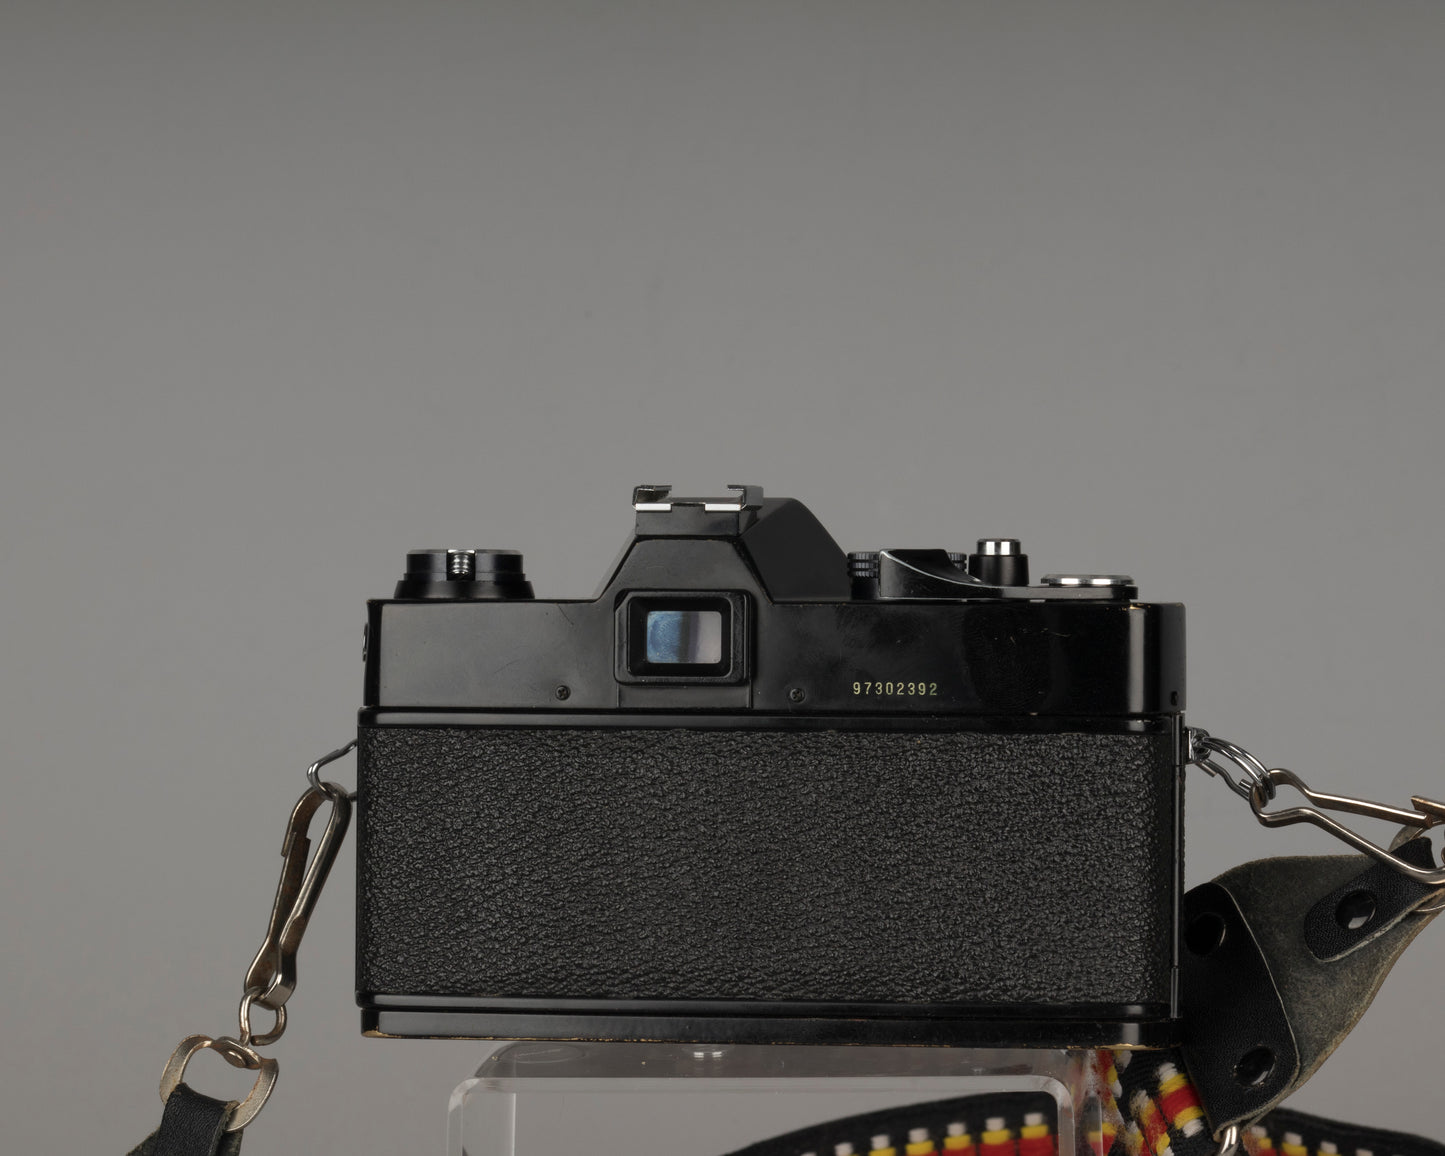 Appareil photo reflex Vivitar 220/SL 35 mm avec objectif 50 mm f1.8 et étui toujours prêt